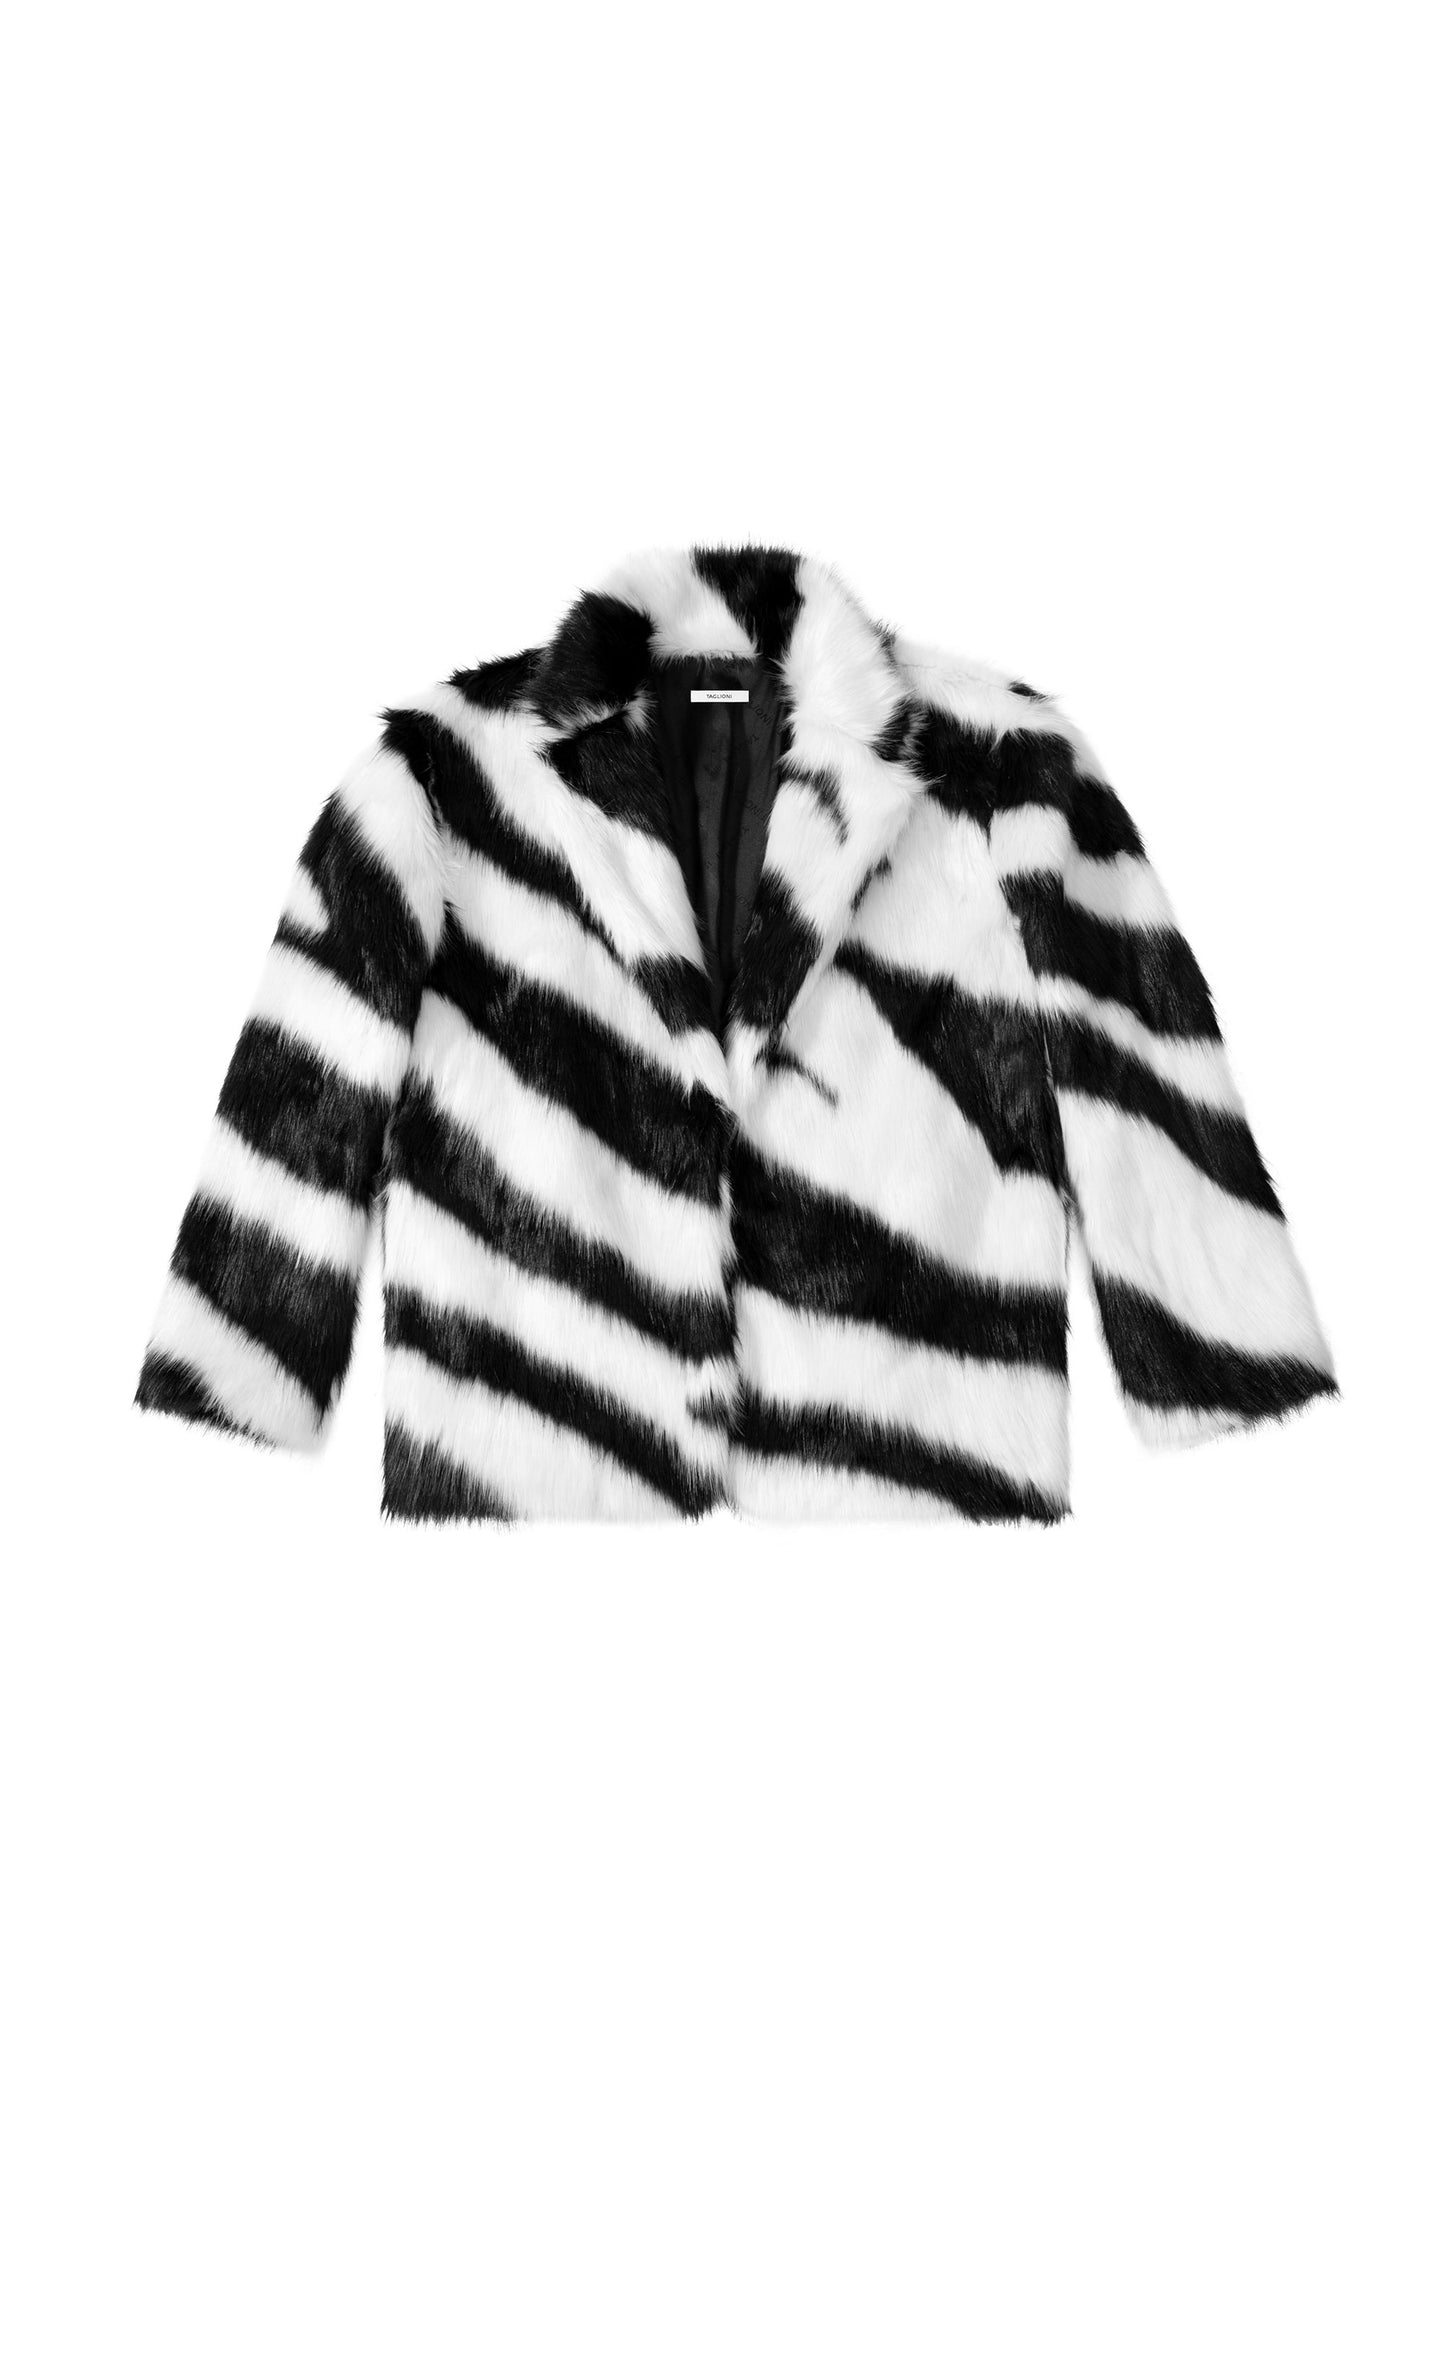 TAGLIONI Peacoat in Fur in Black & White Short